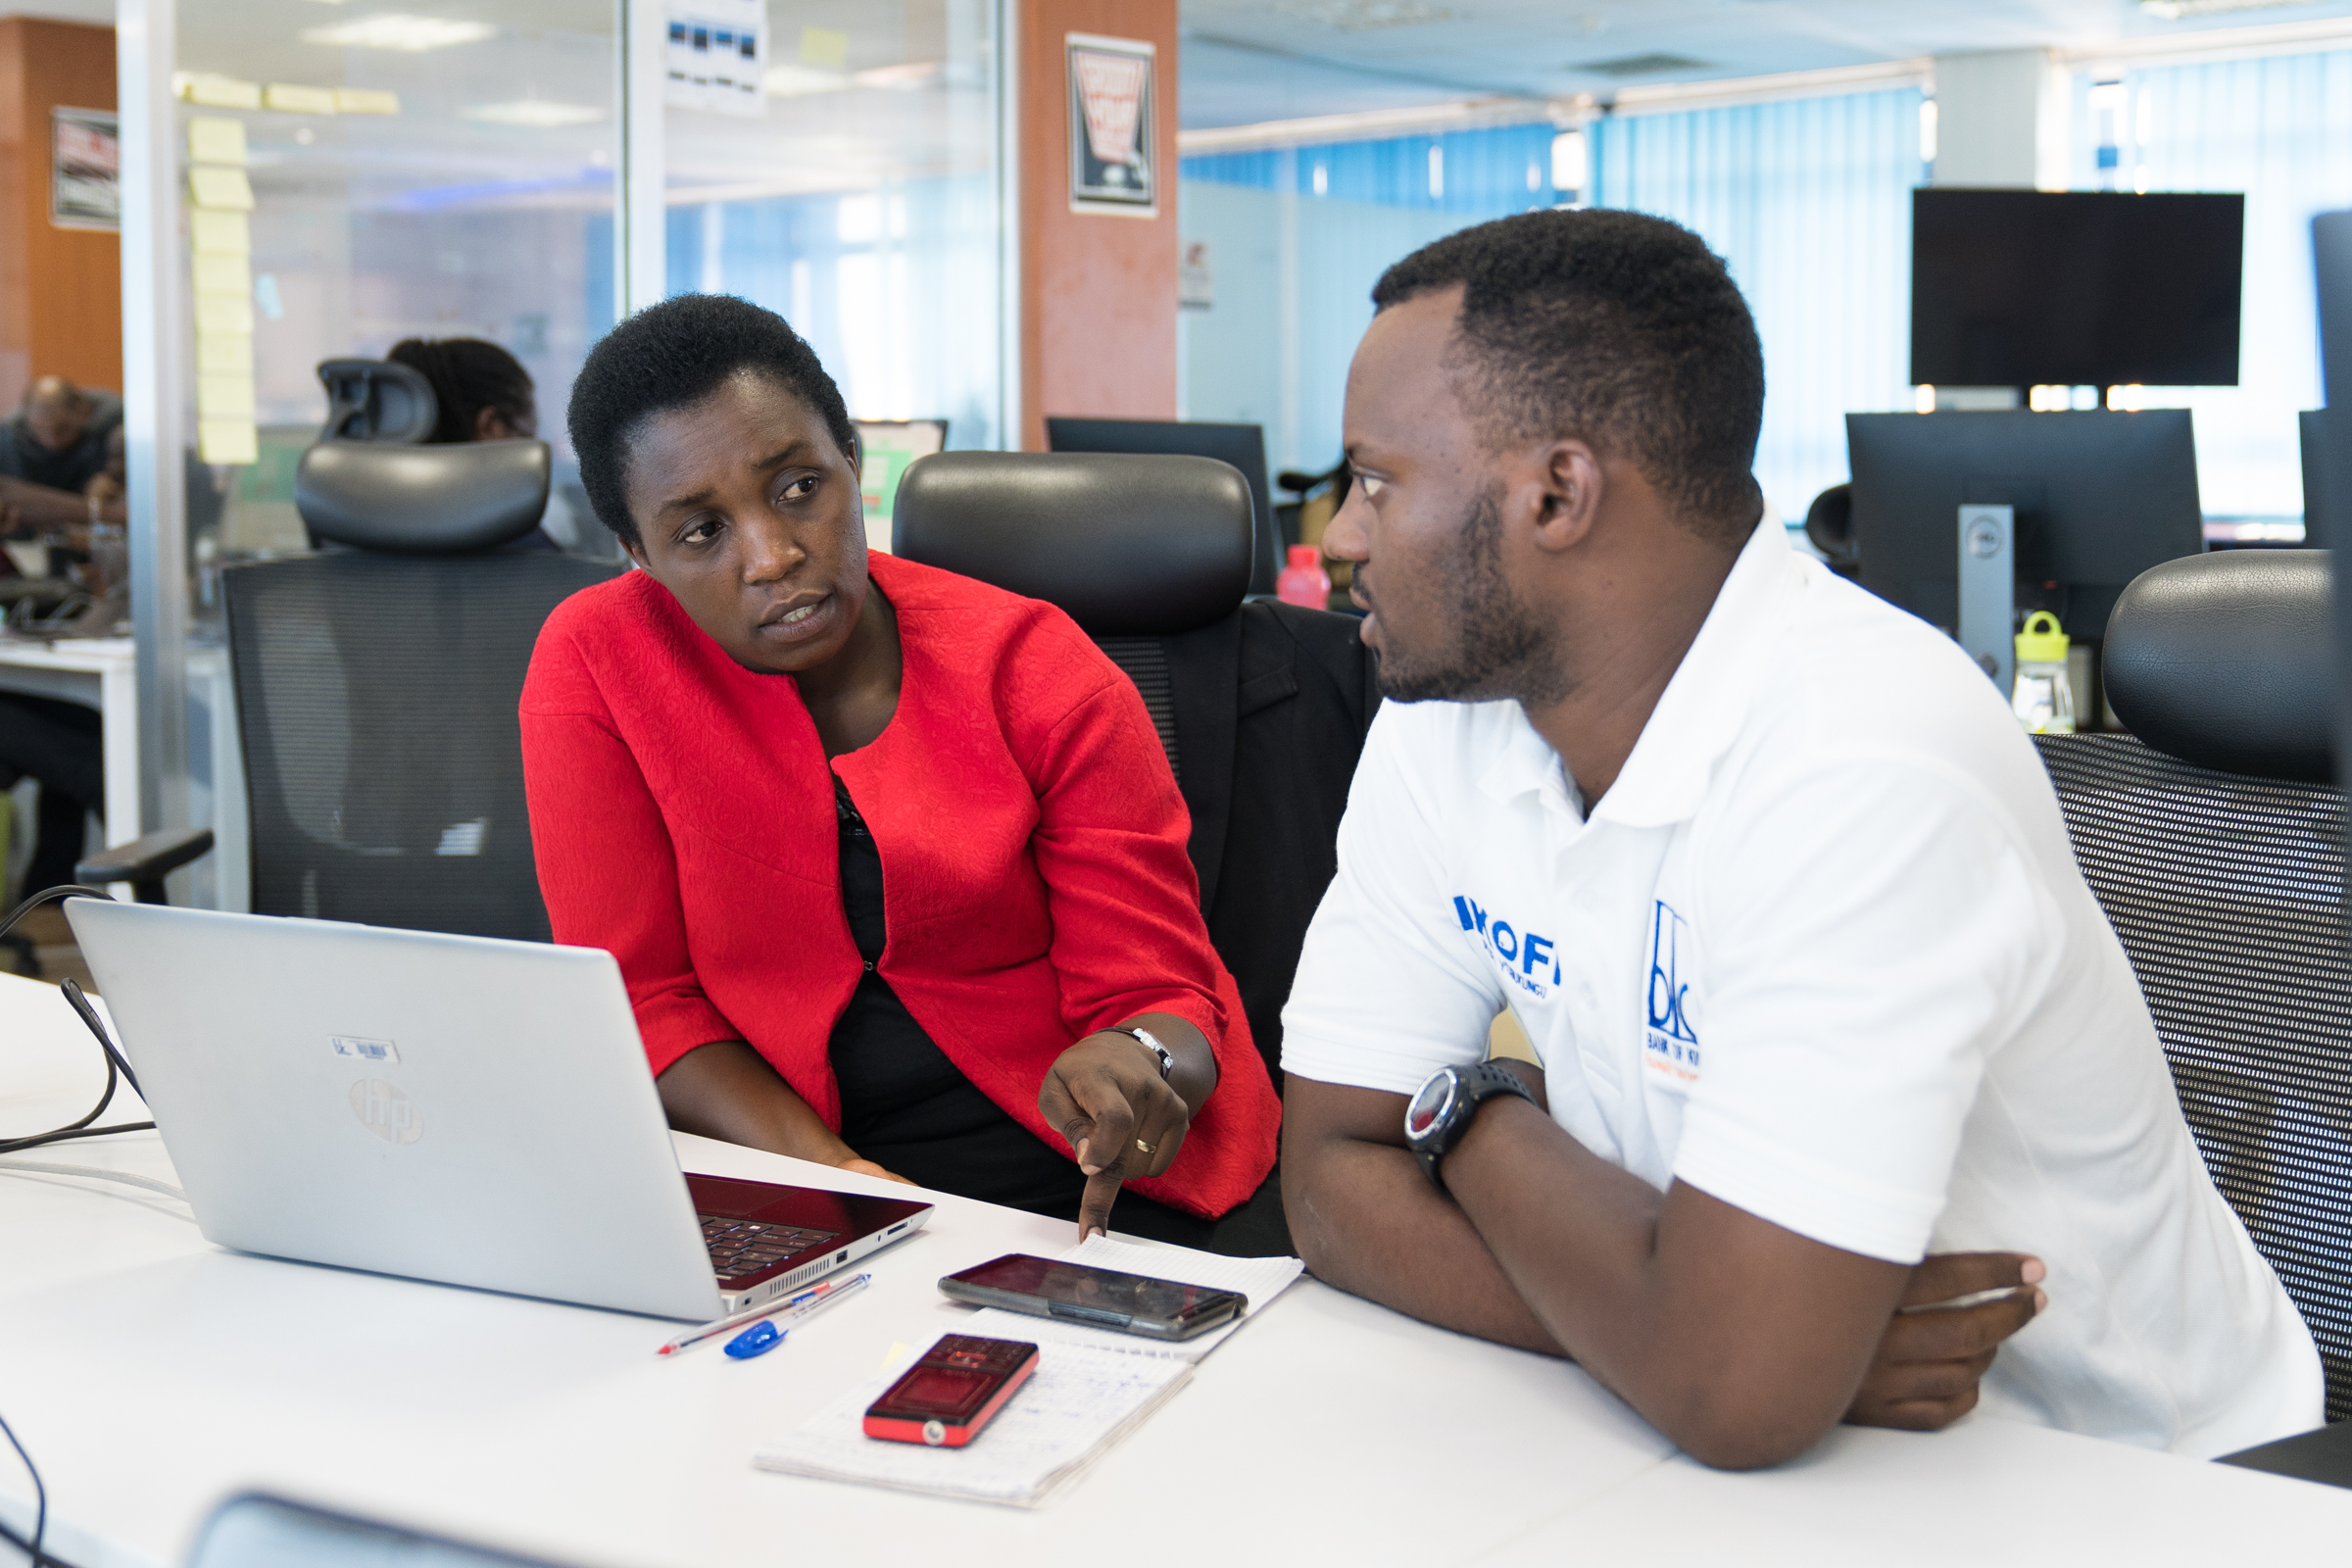 Informatikerin Clothilde Uwineza aus Ruanda im Gespräch mit einem Kollegen am Arbeitsplatz